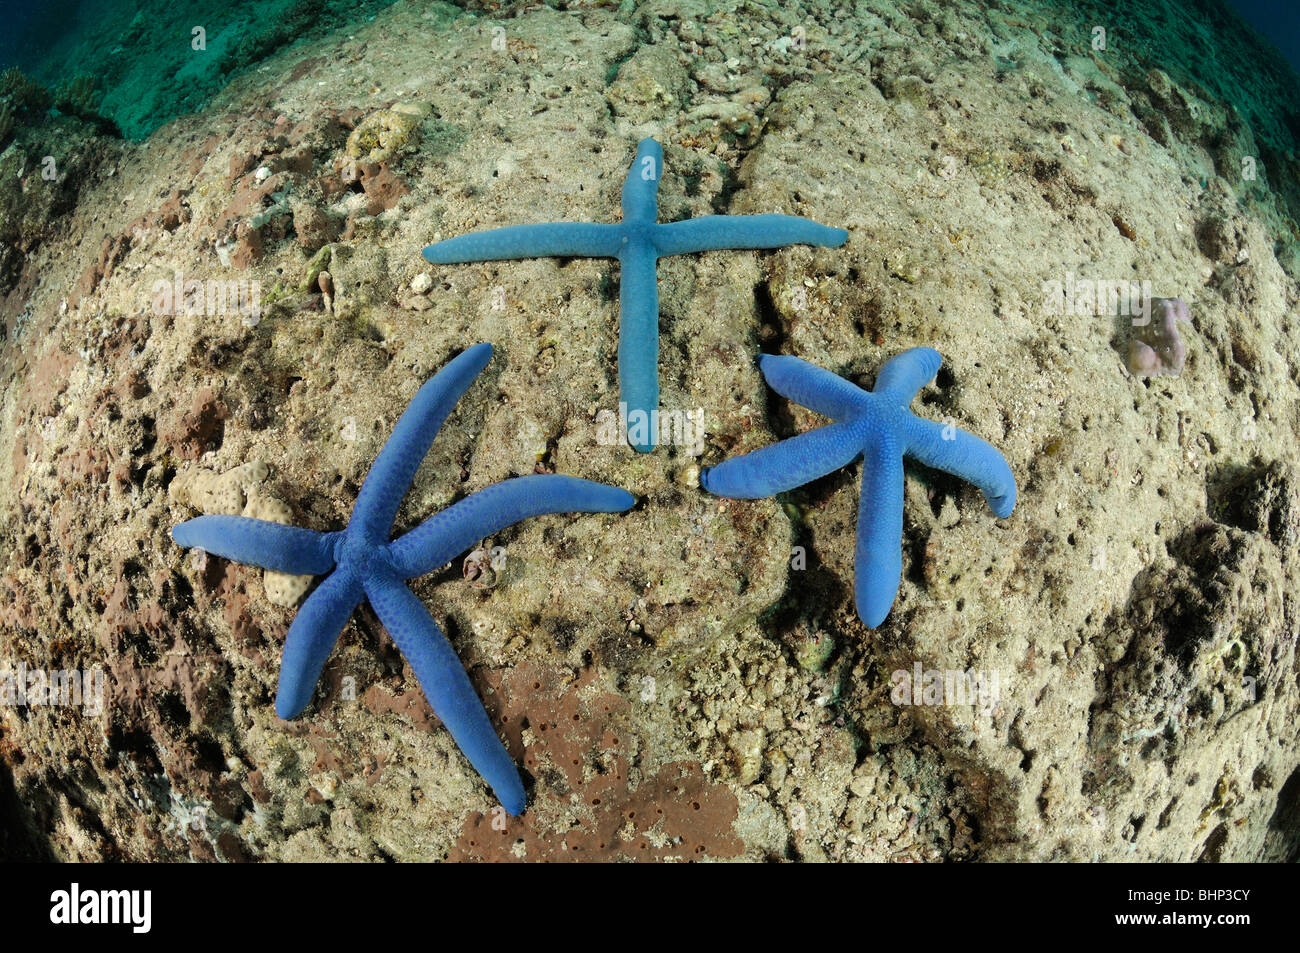 Linckia laevigata, 3 étoiles de mer, étoile de mer bleue en forme de croix, Pemuteran, Bali, Indonésie, l'océan Indo-pacifique Banque D'Images